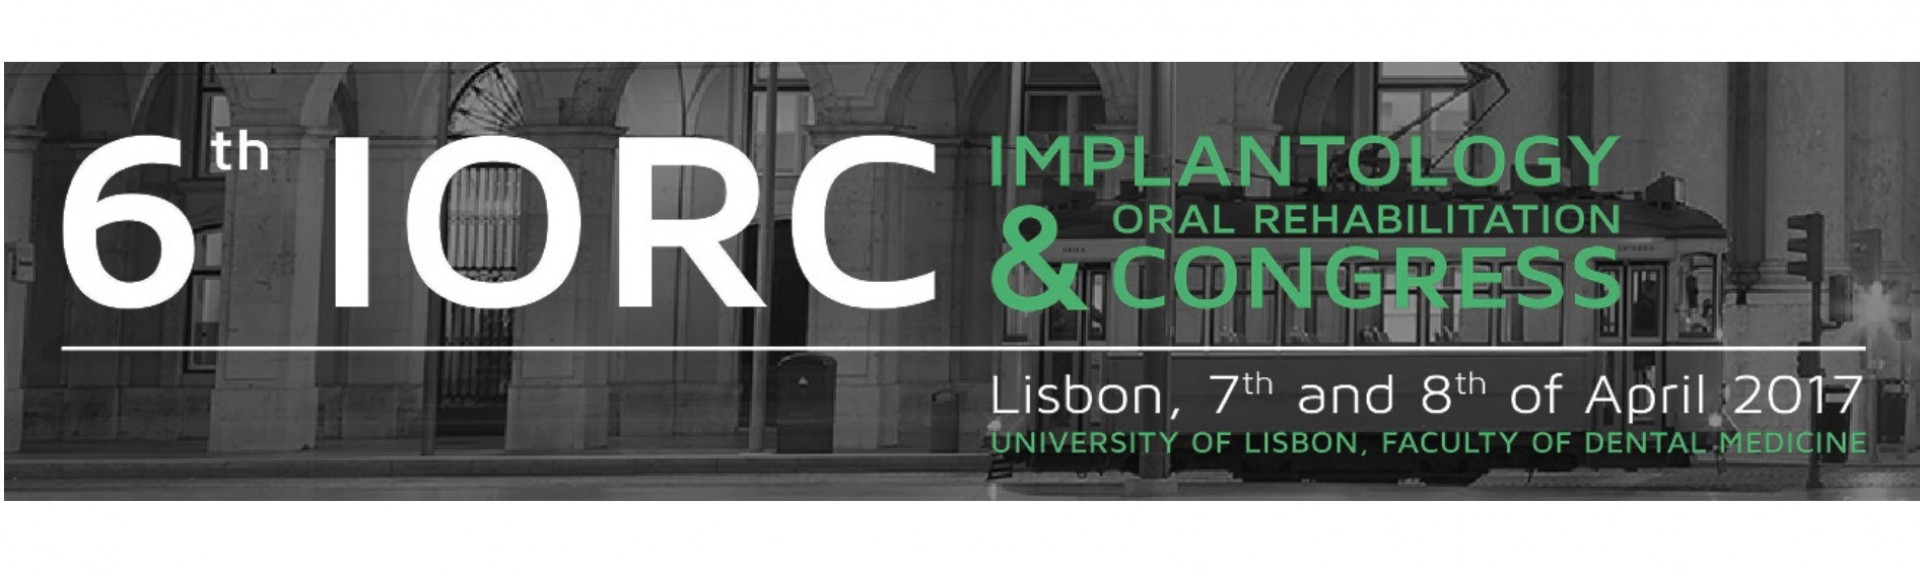 Lisboa se convierte en el punto de encuentro de la Implantología y la Rehabilitación Oral